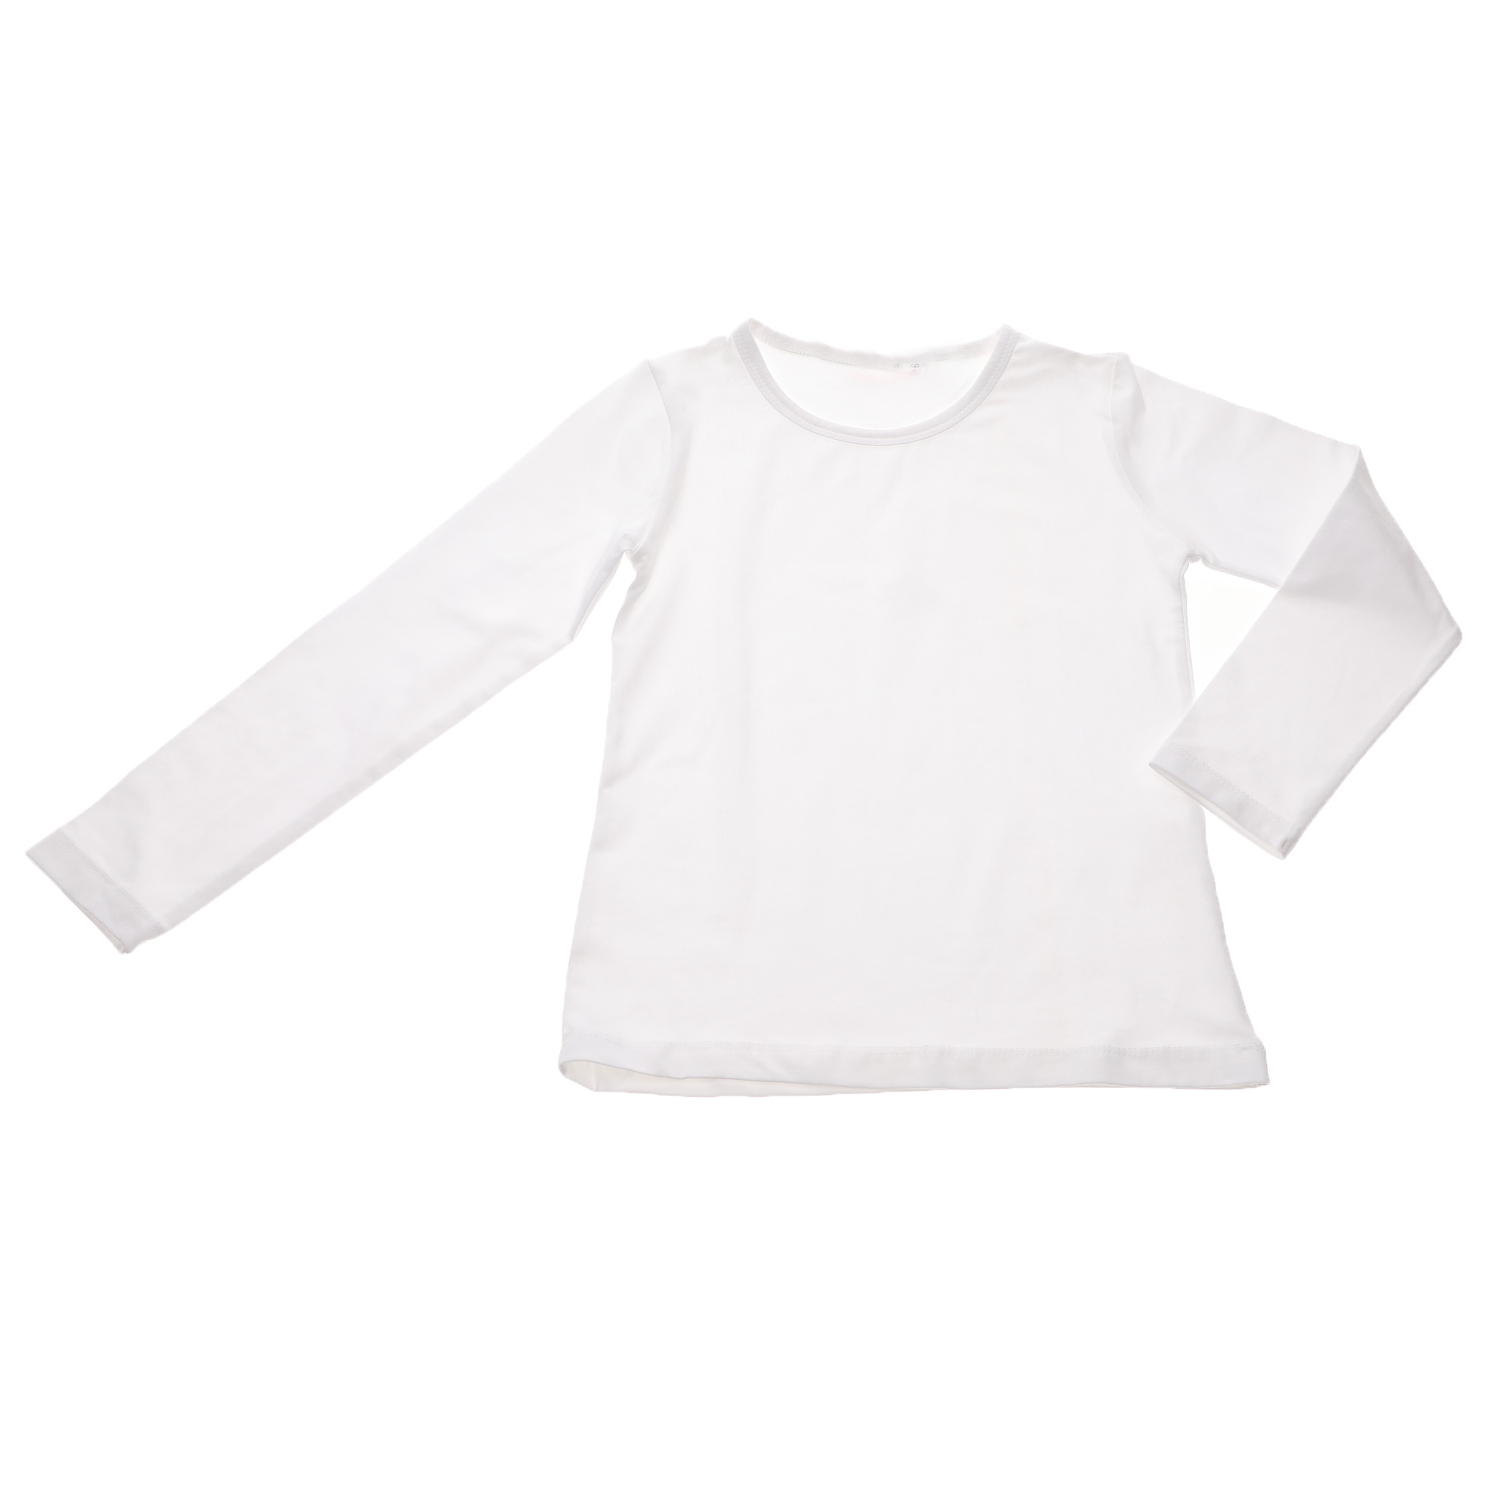 Παιδικά/Girls/Ρούχα/Μπλούζες Μακρυμάνικες SAM 0-13 - Παιδική μπλούζα SAM 0-13 λευκή